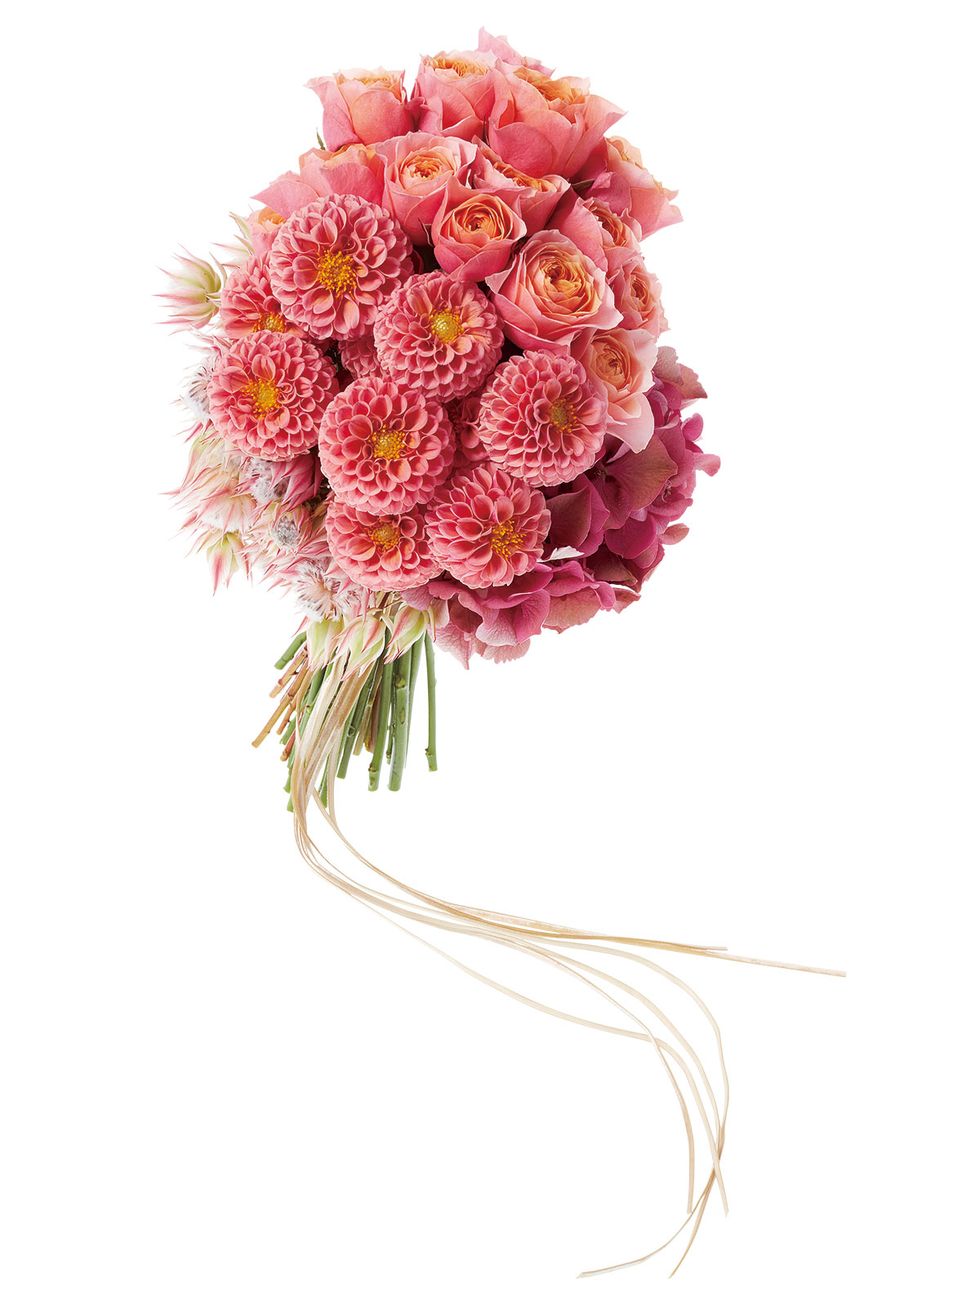 Flower, Bouquet, Cut flowers, Pink, Plant, Flowering plant, Chrysanths, Petal, Flower Arranging, Floral design, 